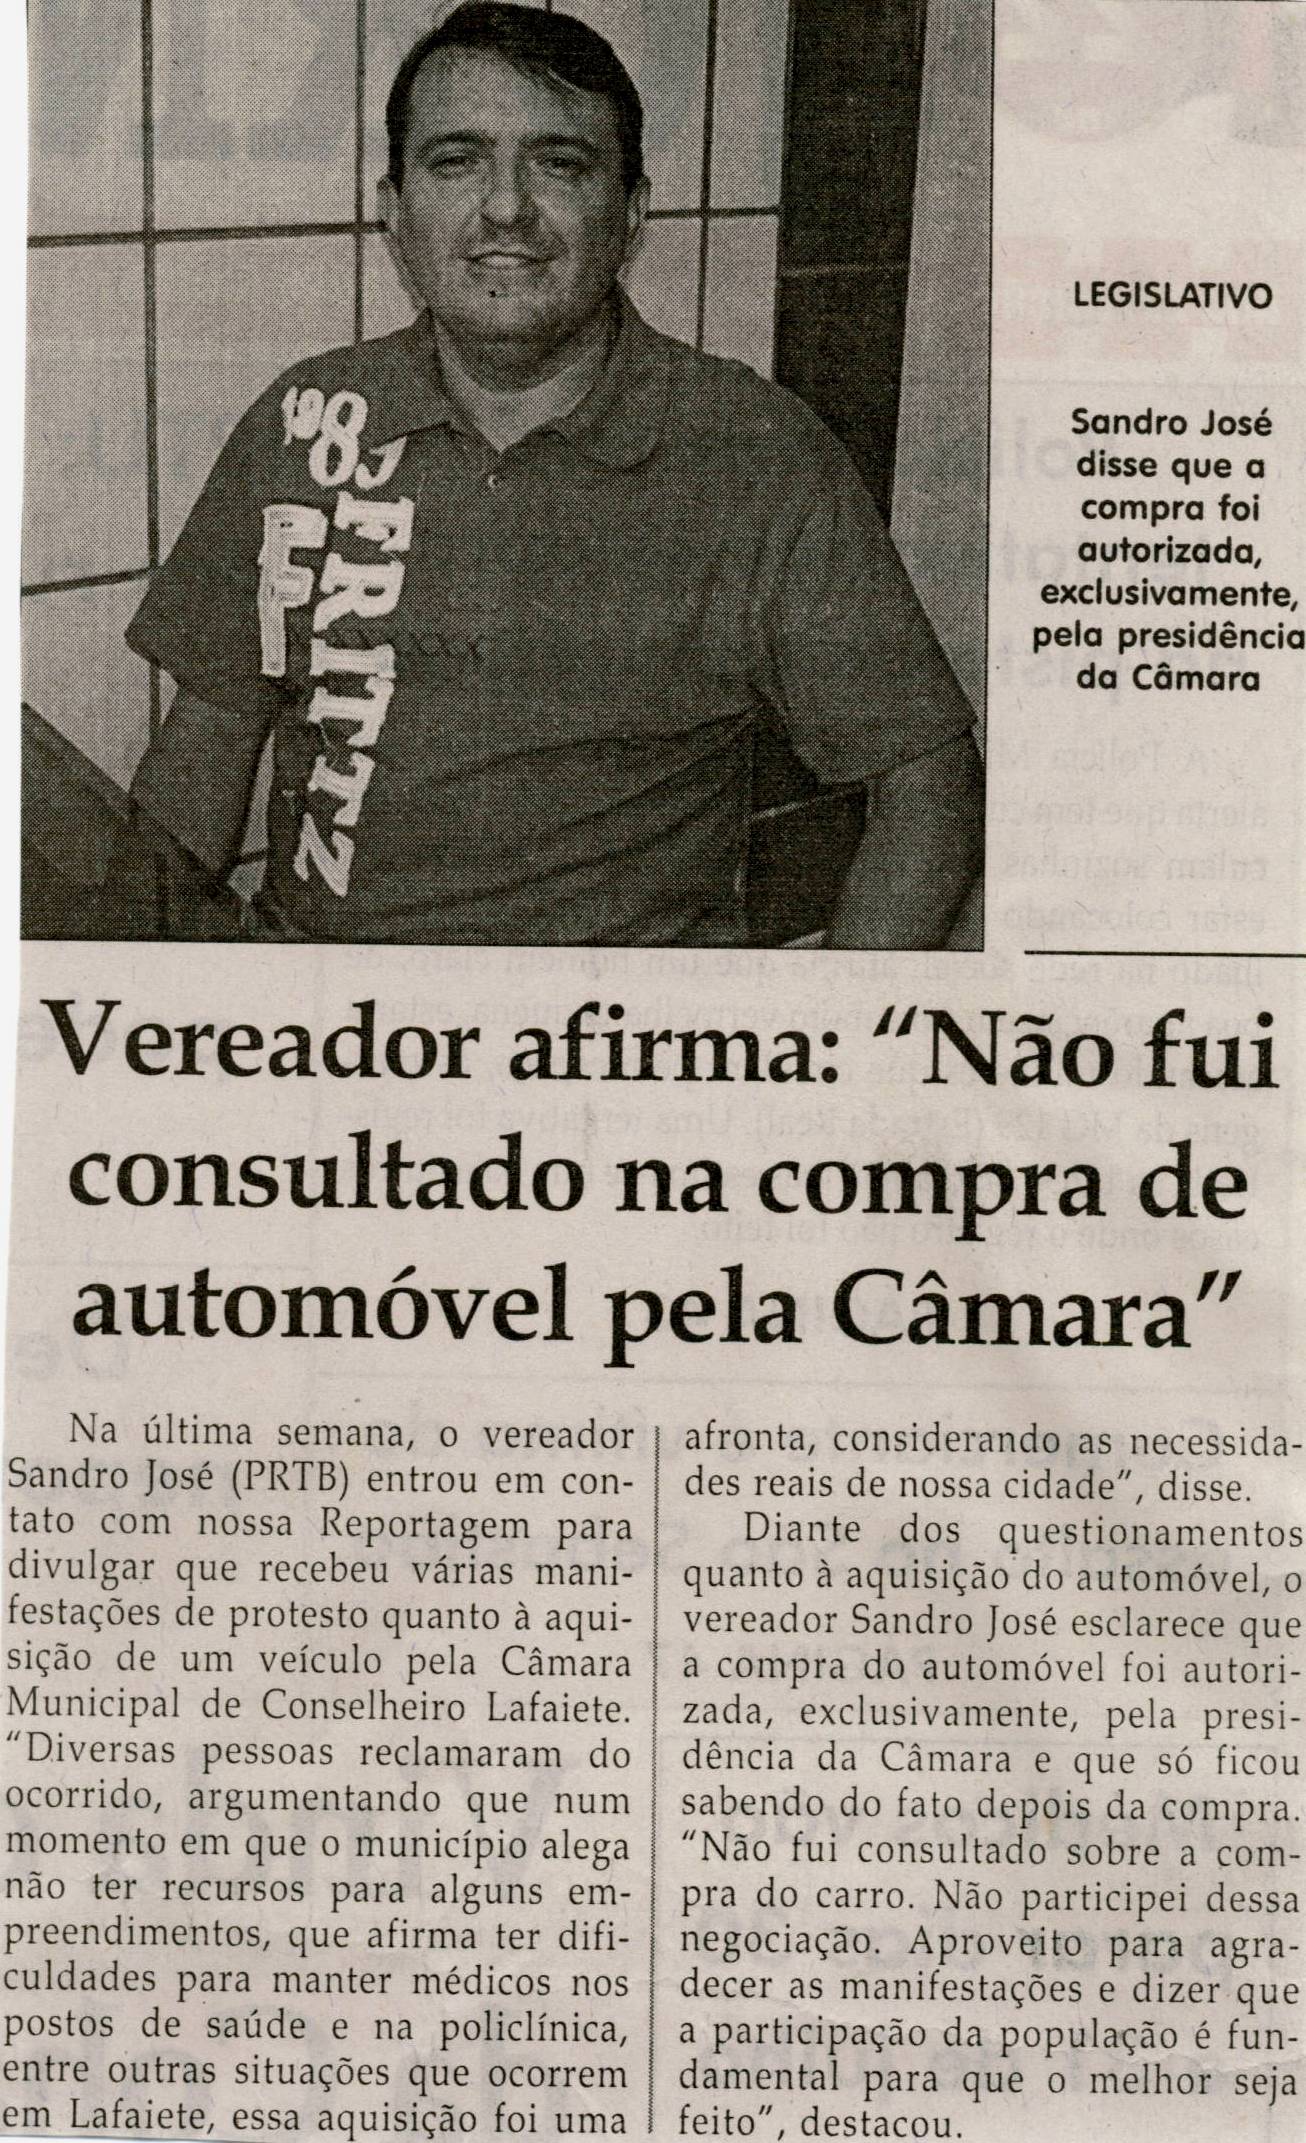 Vereador afirma "Não fui consultado na compra de automóvel pela Câmara". Jornal Correio da Cidade, Conselheiro Lafaiete, 27 jul. 2013,  02 ago. 2013, p. 02.